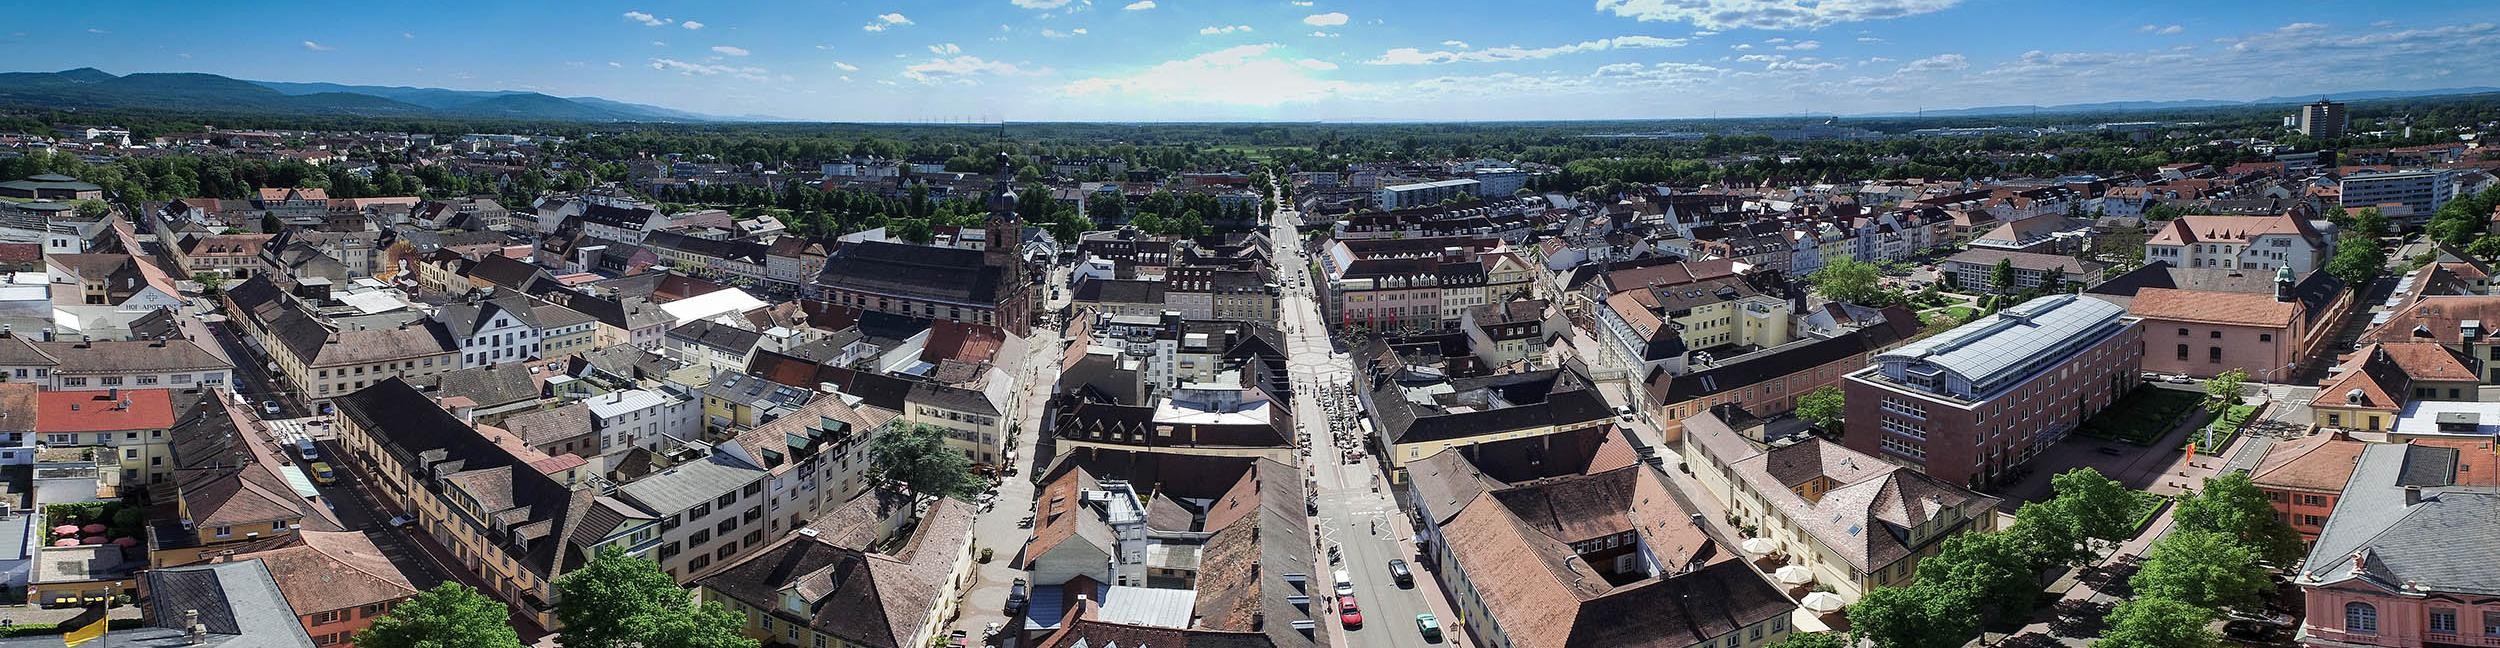 Aerial view of the city center of Rastatt